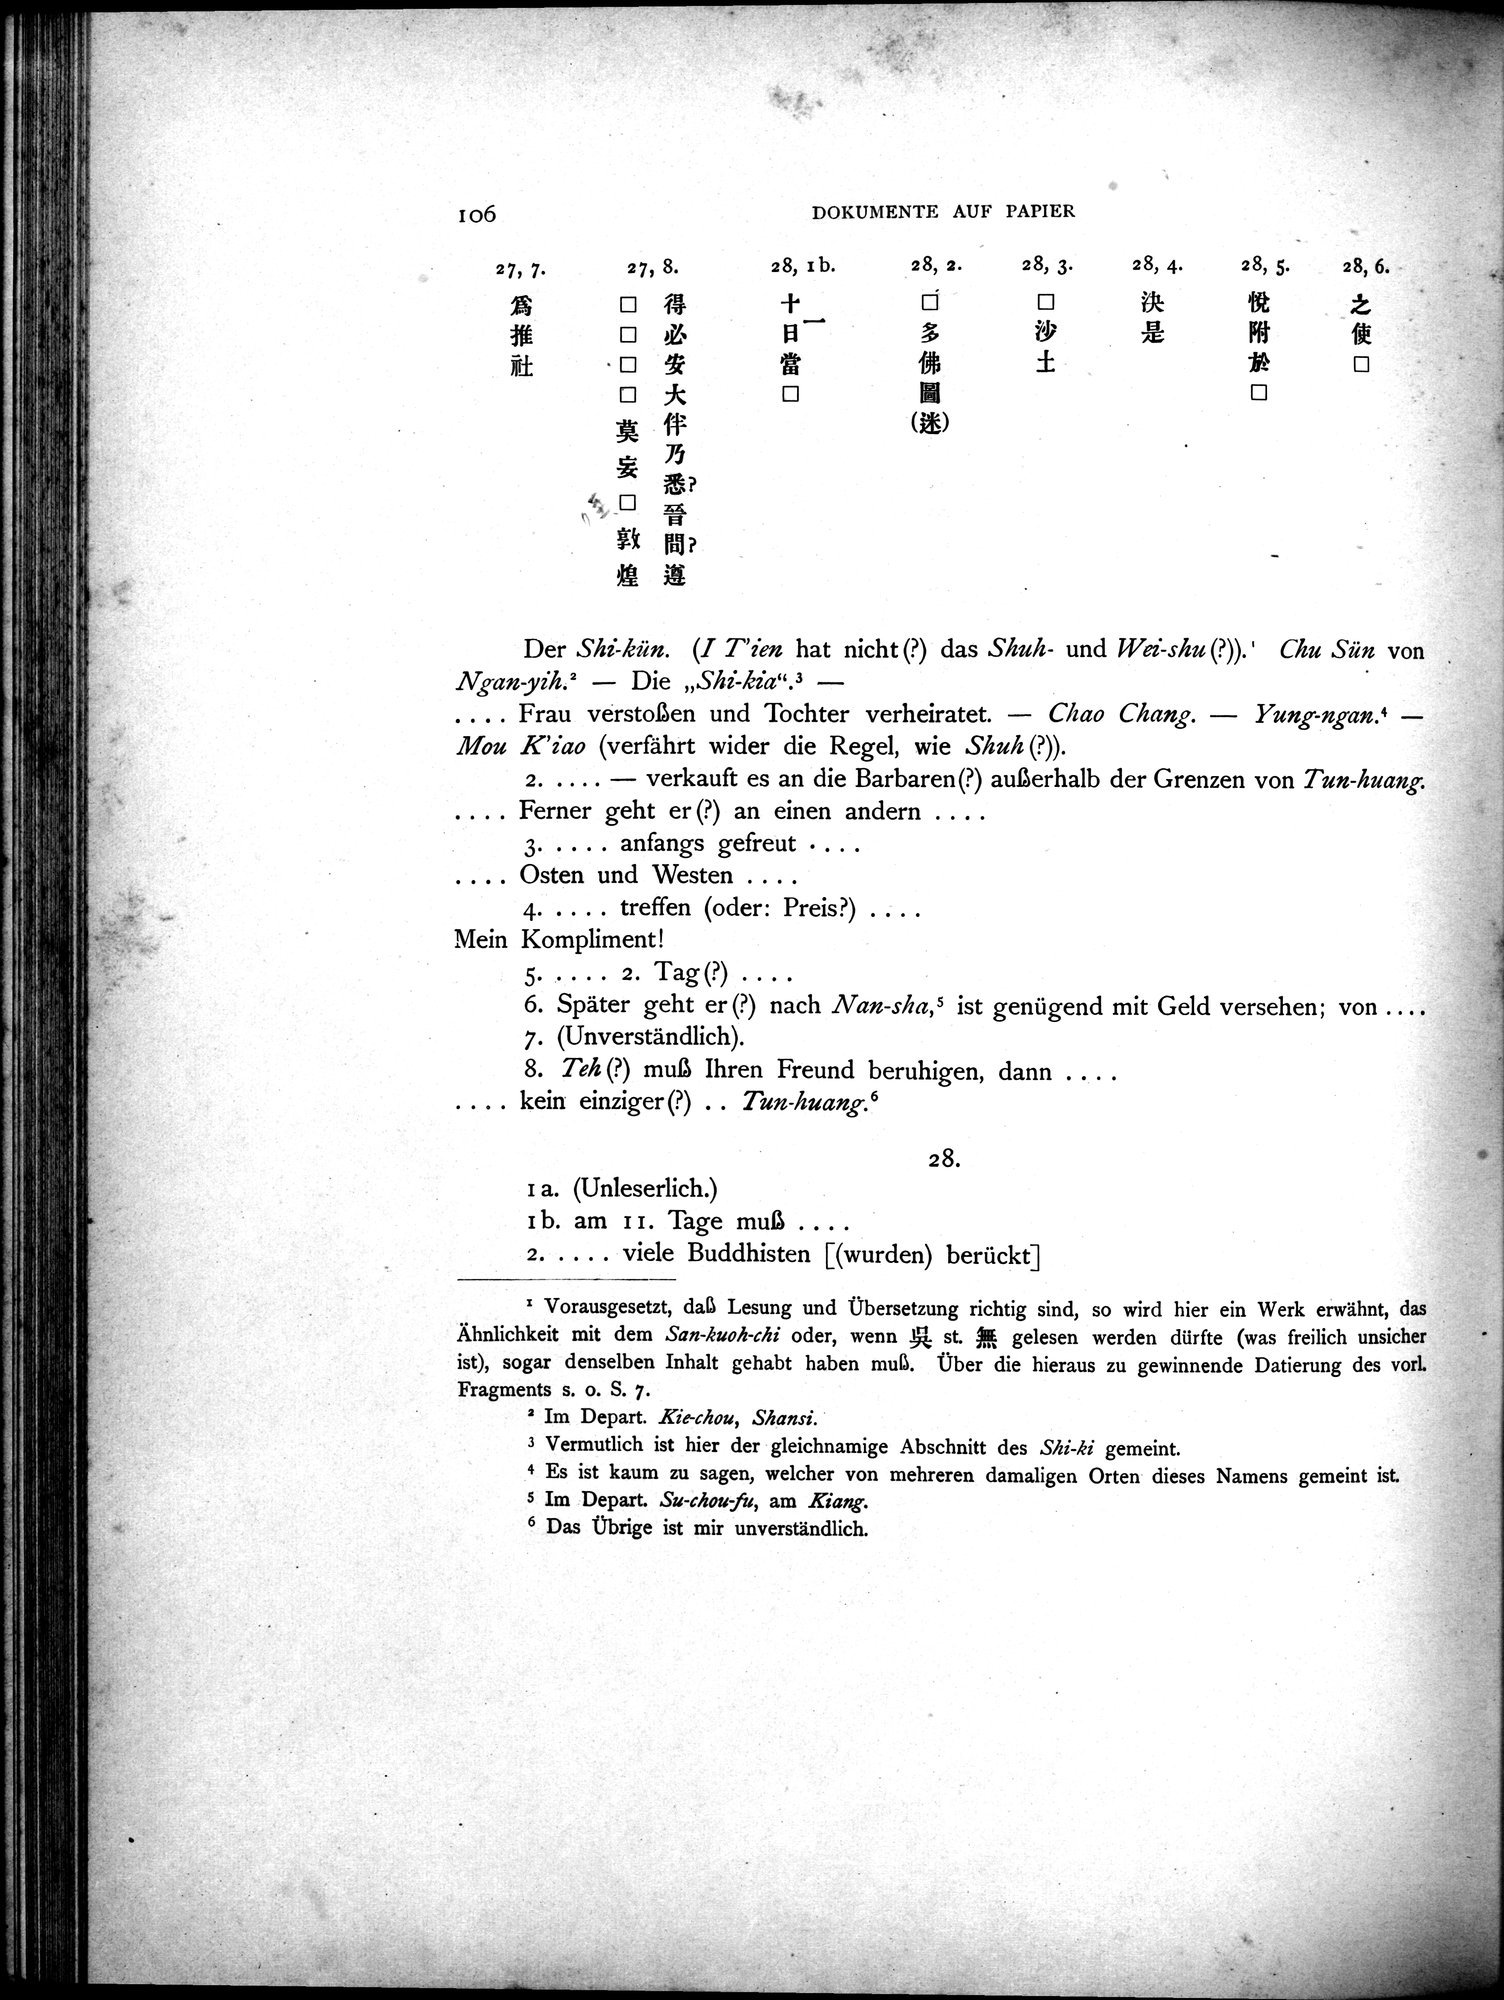 Die Chinesischen Handschriften- und sonstigen Kleinfunde Sven Hedins in Lou-lan : vol.1 / Page 130 (Grayscale High Resolution Image)